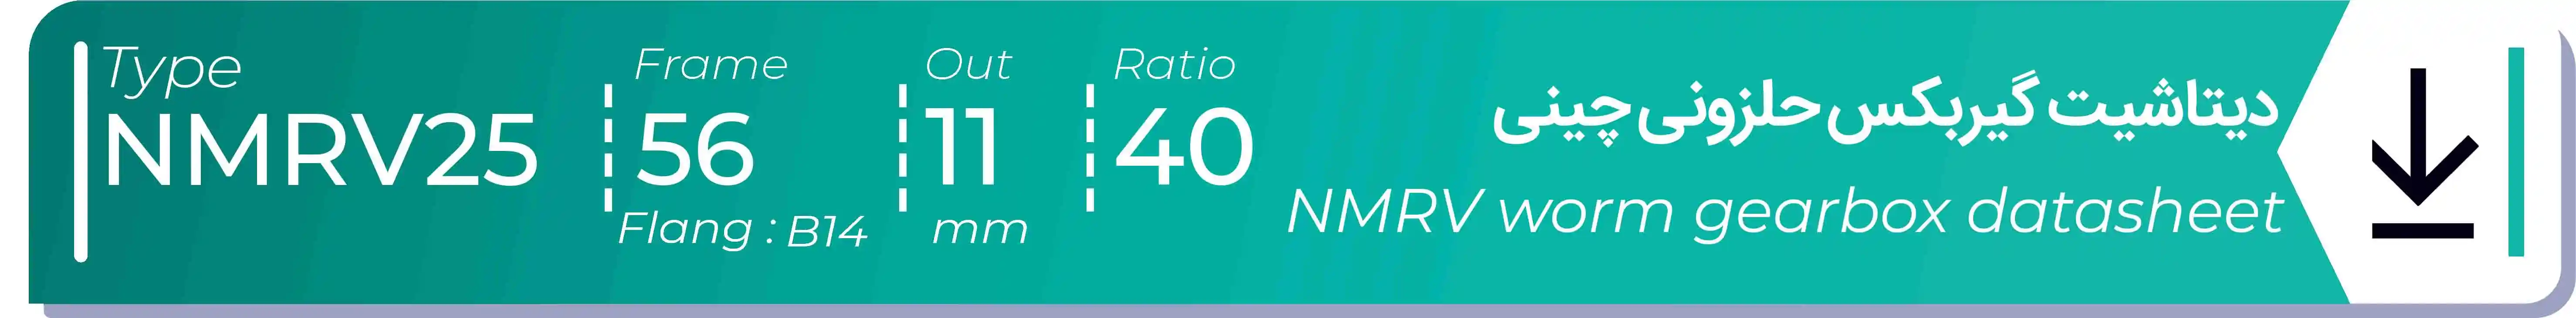  دیتاشیت و مشخصات فنی گیربکس حلزونی چینی   NMRV25  -  با خروجی 11- میلی متر و نسبت40